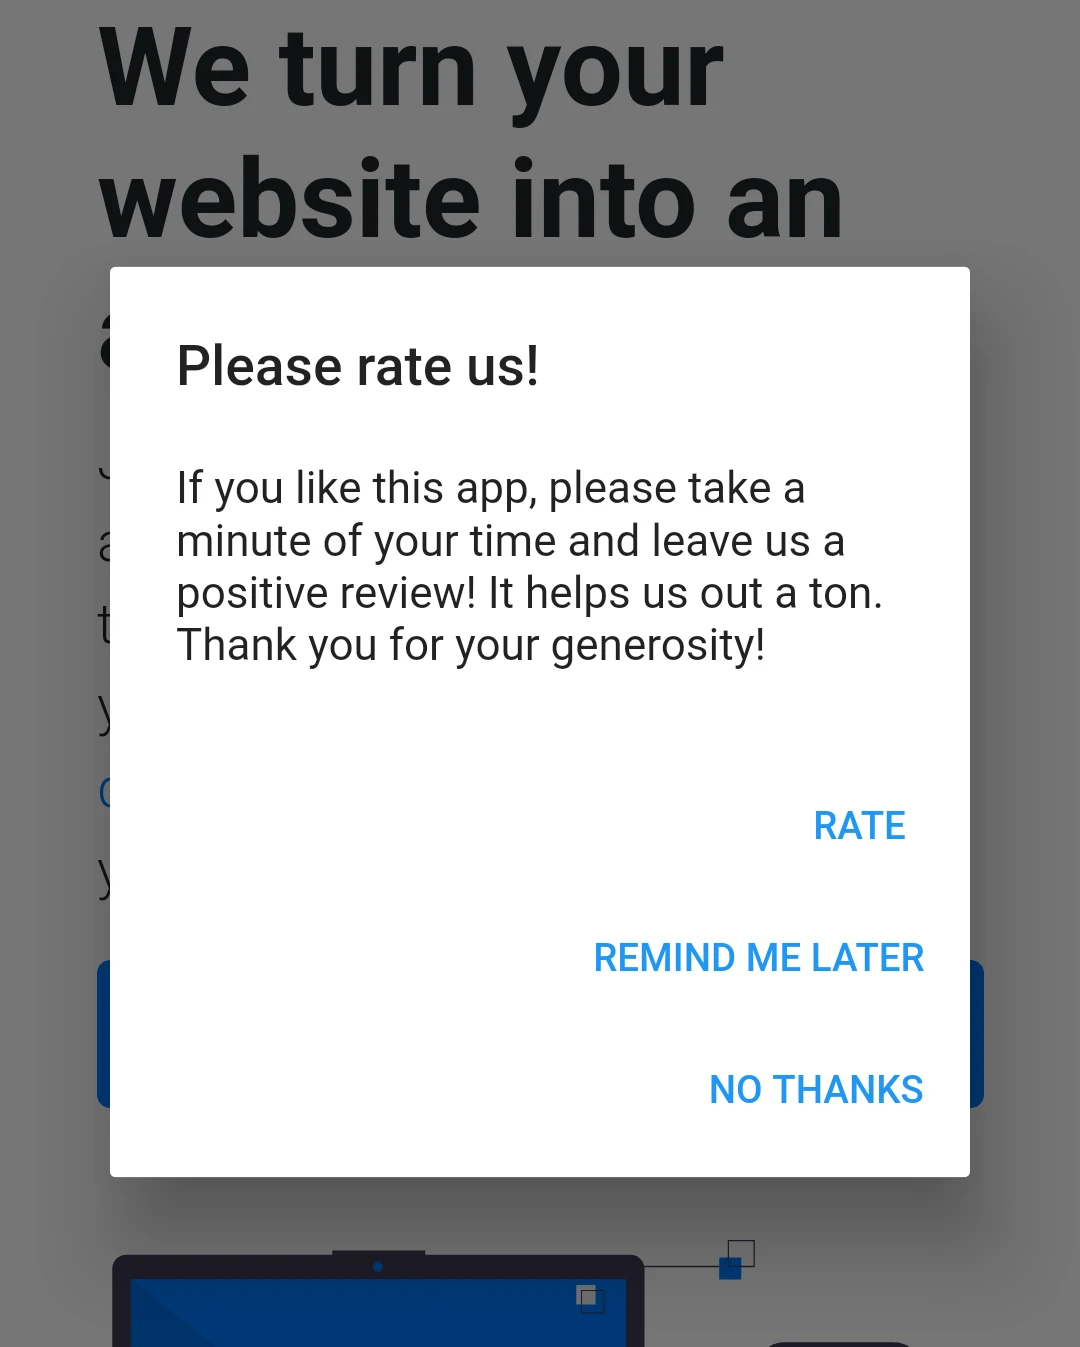 Uma mensagem pop-up do Android pedindo ao usuário para, por favor, deixar uma avaliação. O usuário é apresentado com 3 botões: avaliar, lembre-me mais tarde e nunca.